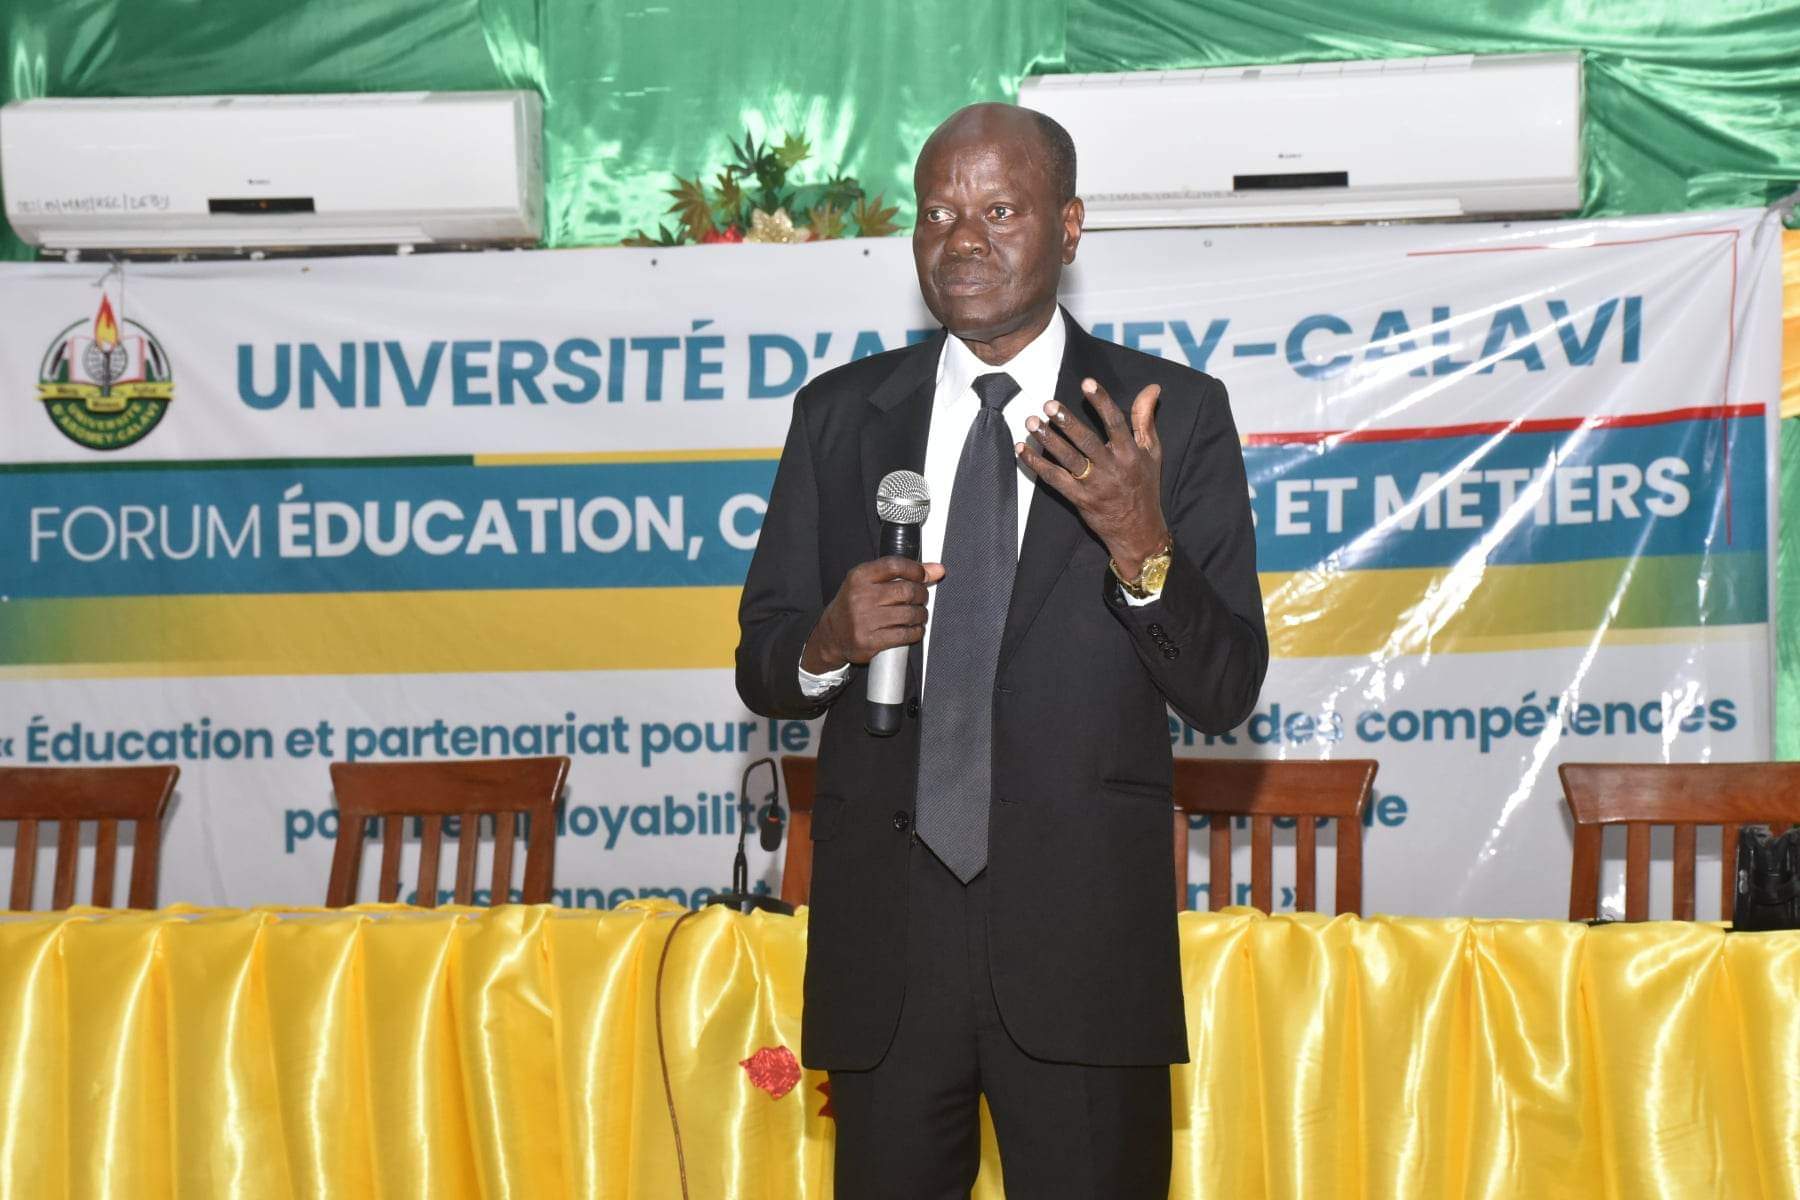 Bénin : le développement des compétences chez les apprenants pour accroître l’employabilité, au cœur d’un forum sur l’éducation à l’UAC